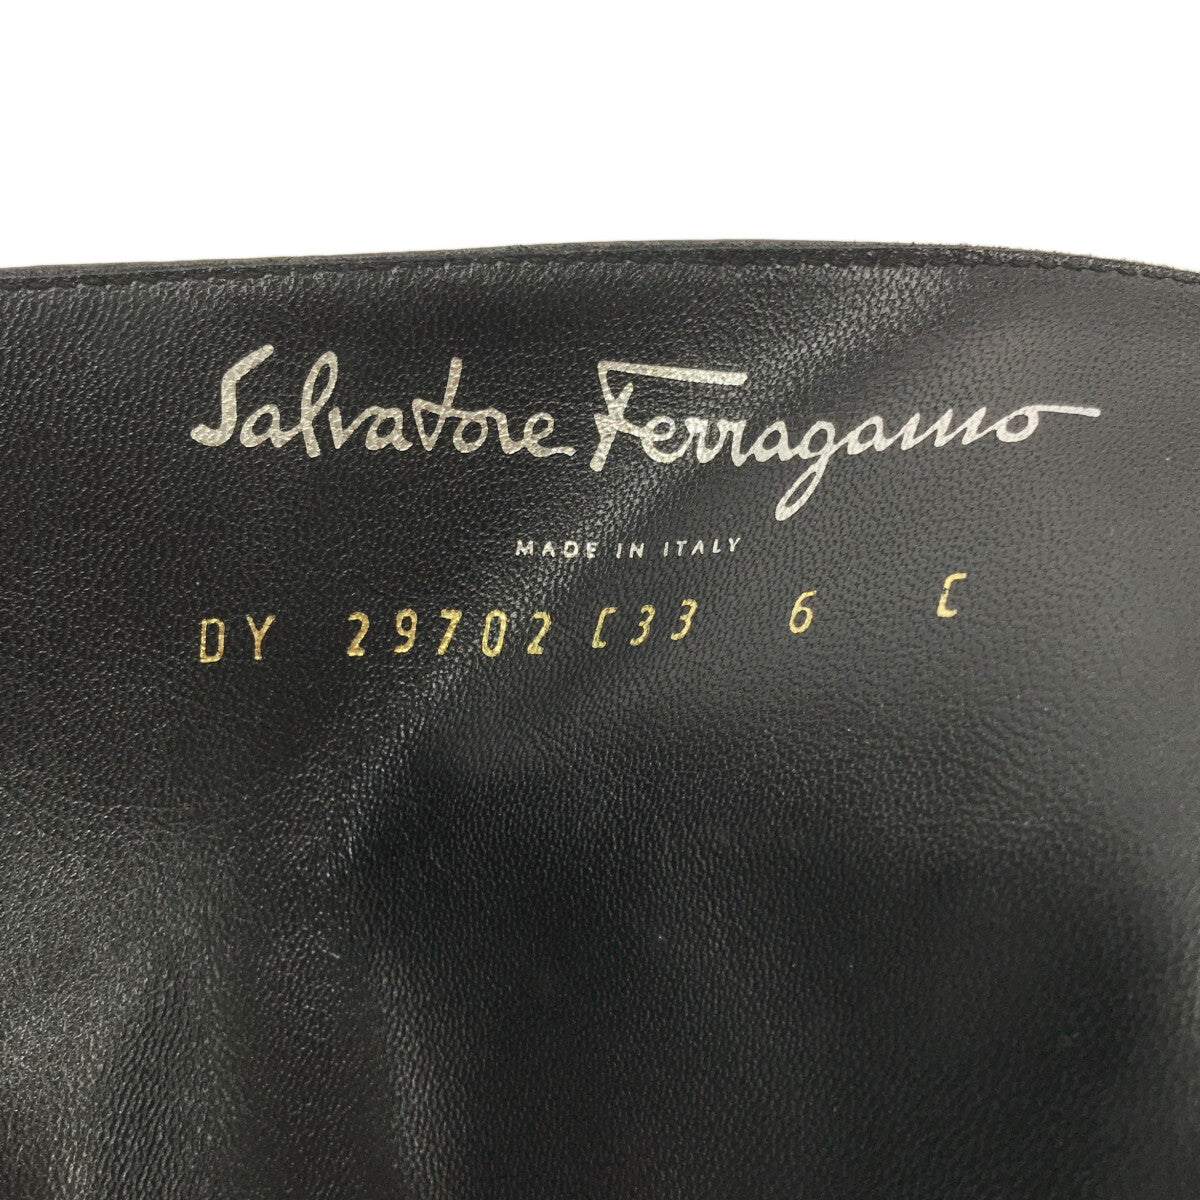 Salvatore Ferragamo / サルヴァトーレフェラガモ | ガンチーニロゴ ロングブーツ | 6 | ブラック | レディース